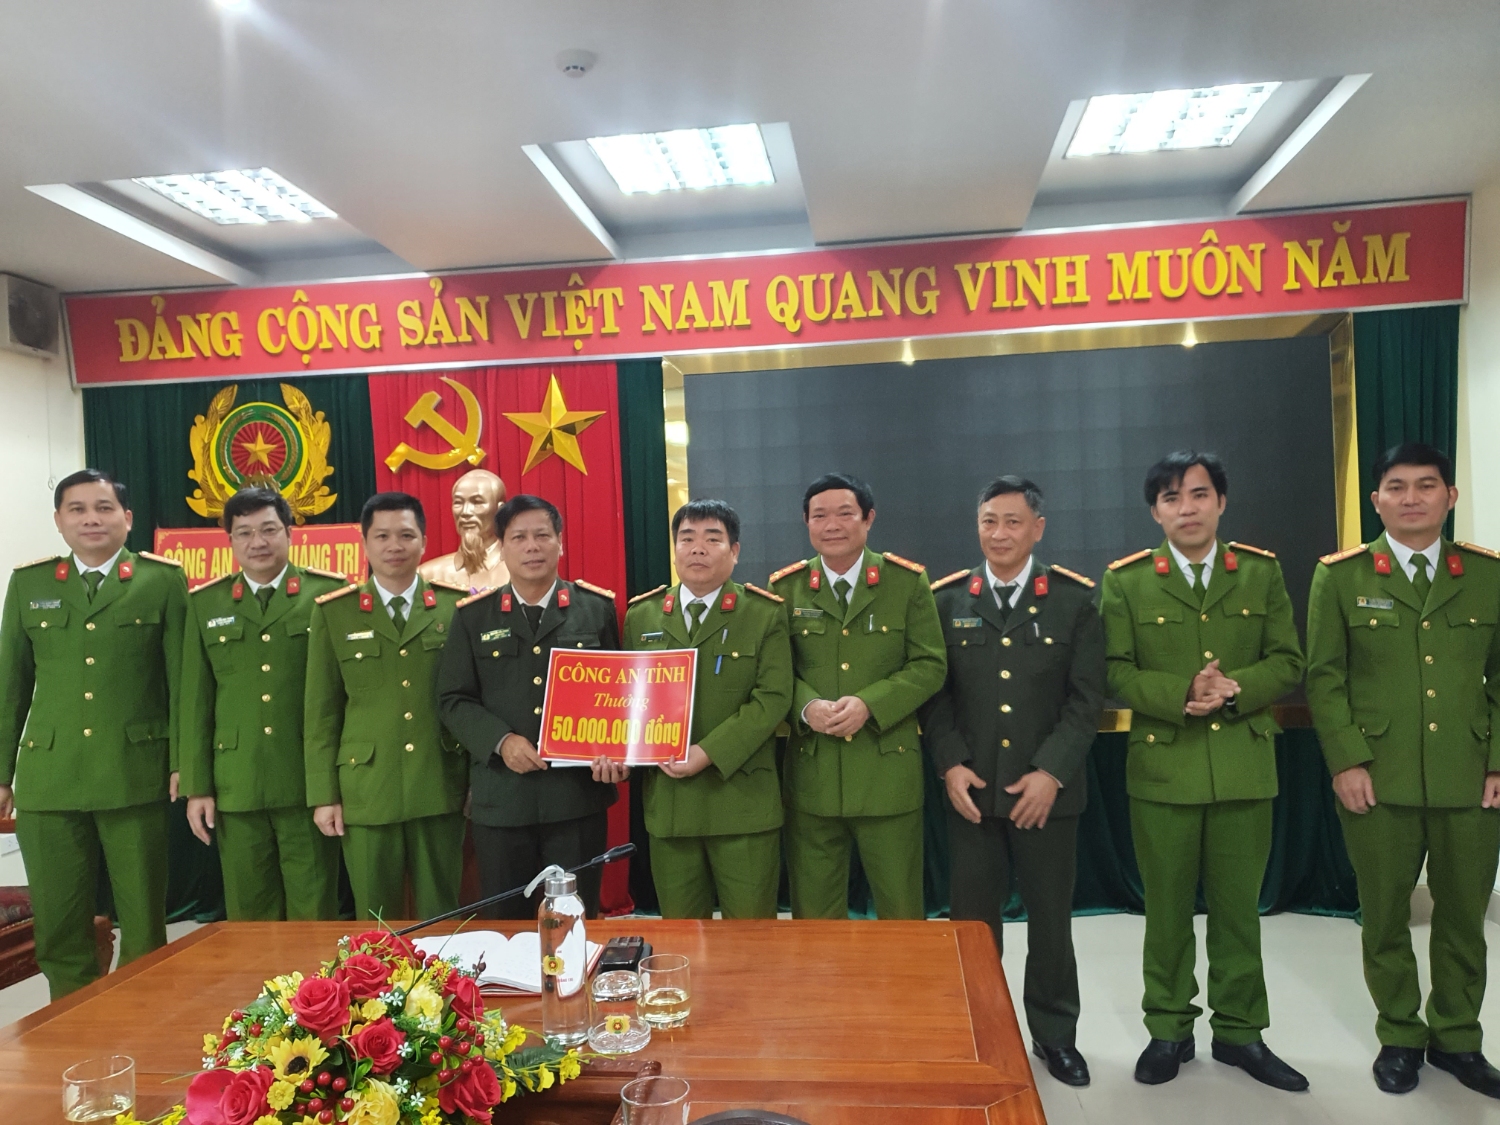 Đại tá Nguyễn Văn Thanh, Giám đốc Công an tỉnh trao thưởng cho Ban chuyên án